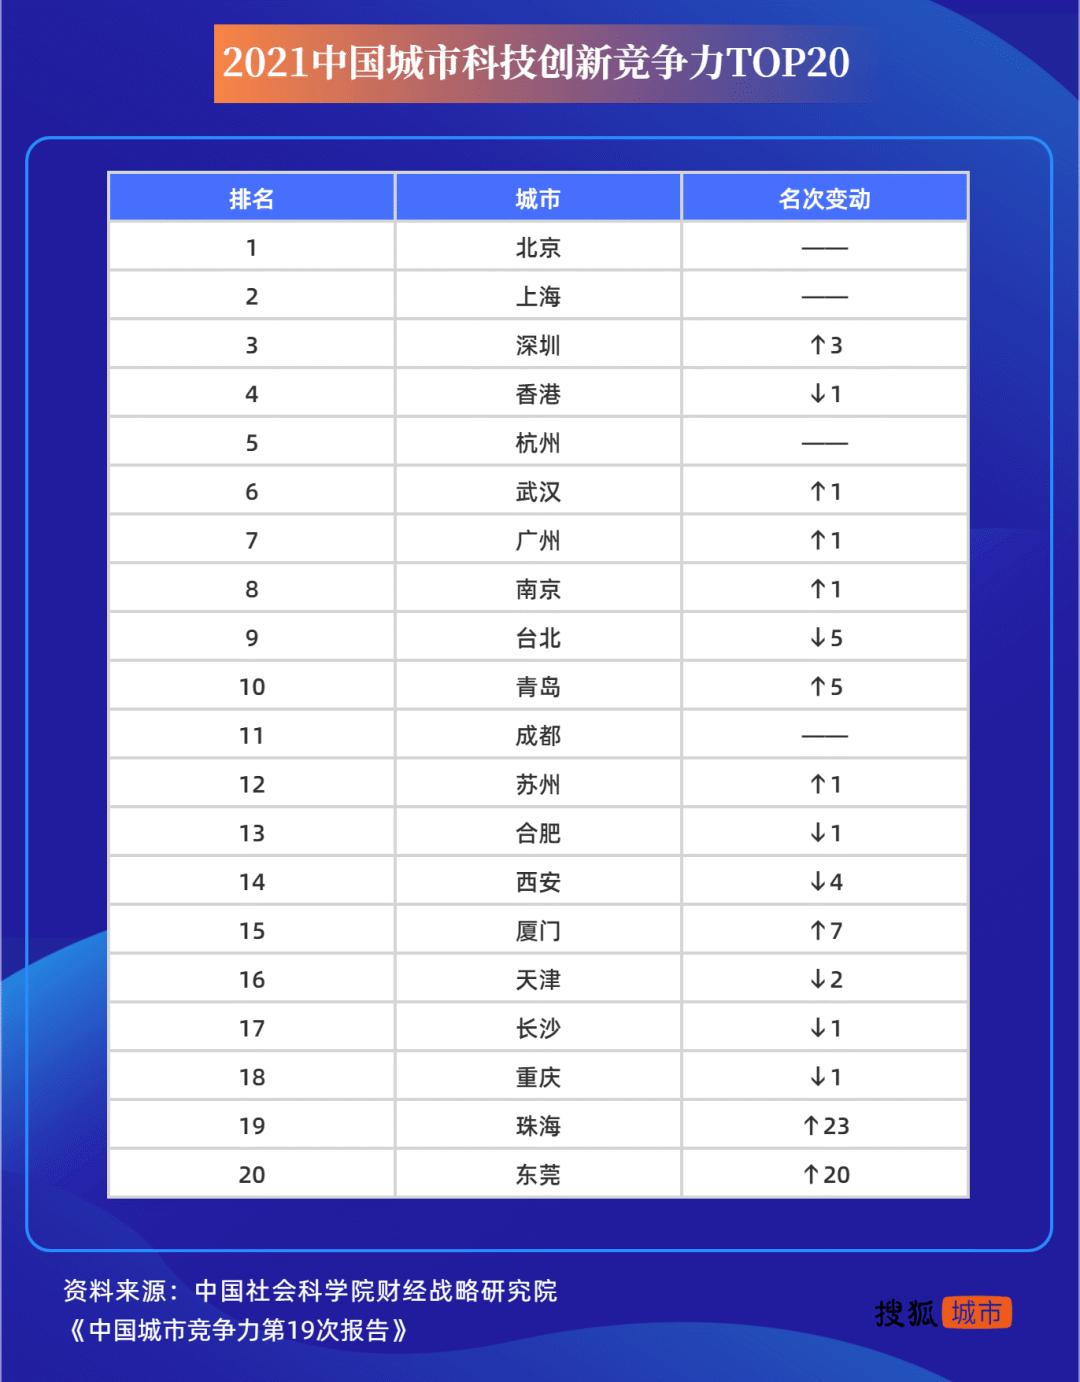 数据来源：《中国城市竞争力报告No.19》 制图：搜狐城市